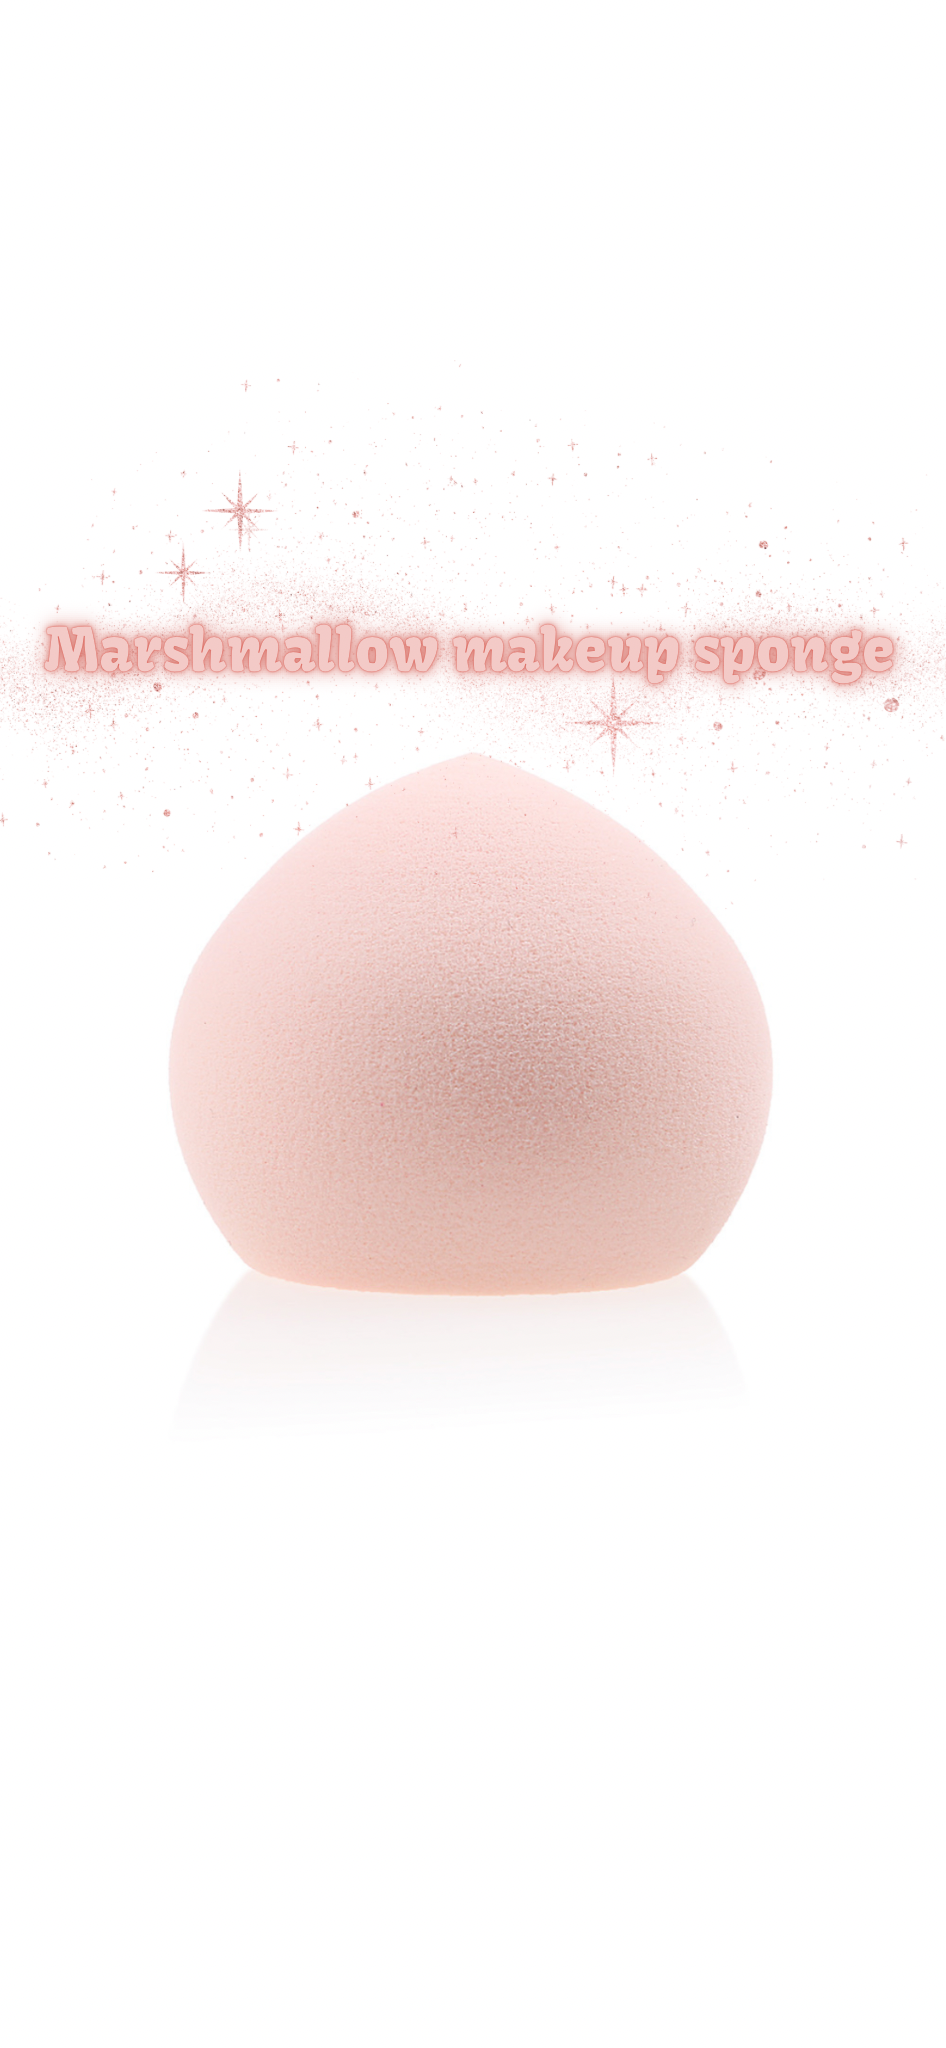 Marshmellow makeup sponge